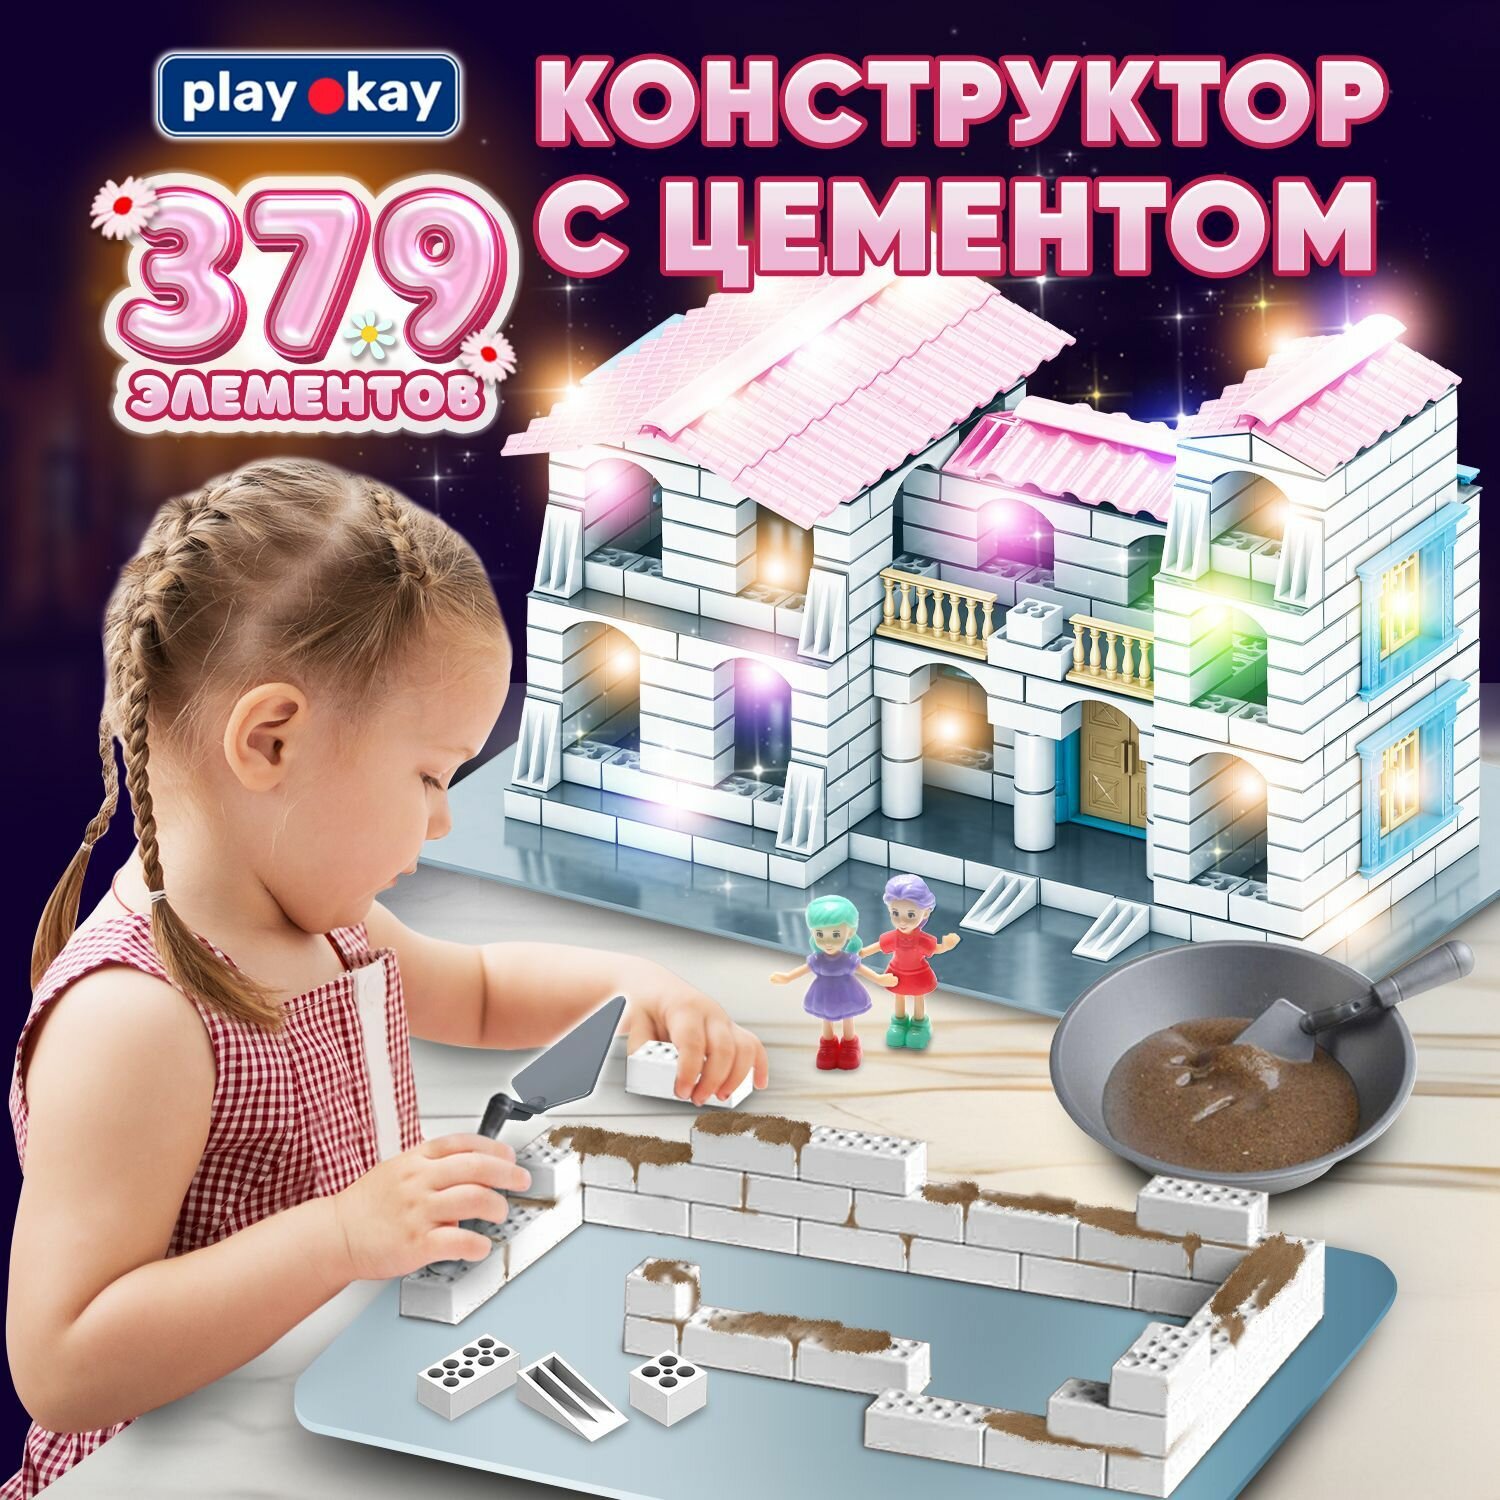 Play Okay Конструктор из кирпичиков блочный 3D со смесью, 379 деталей